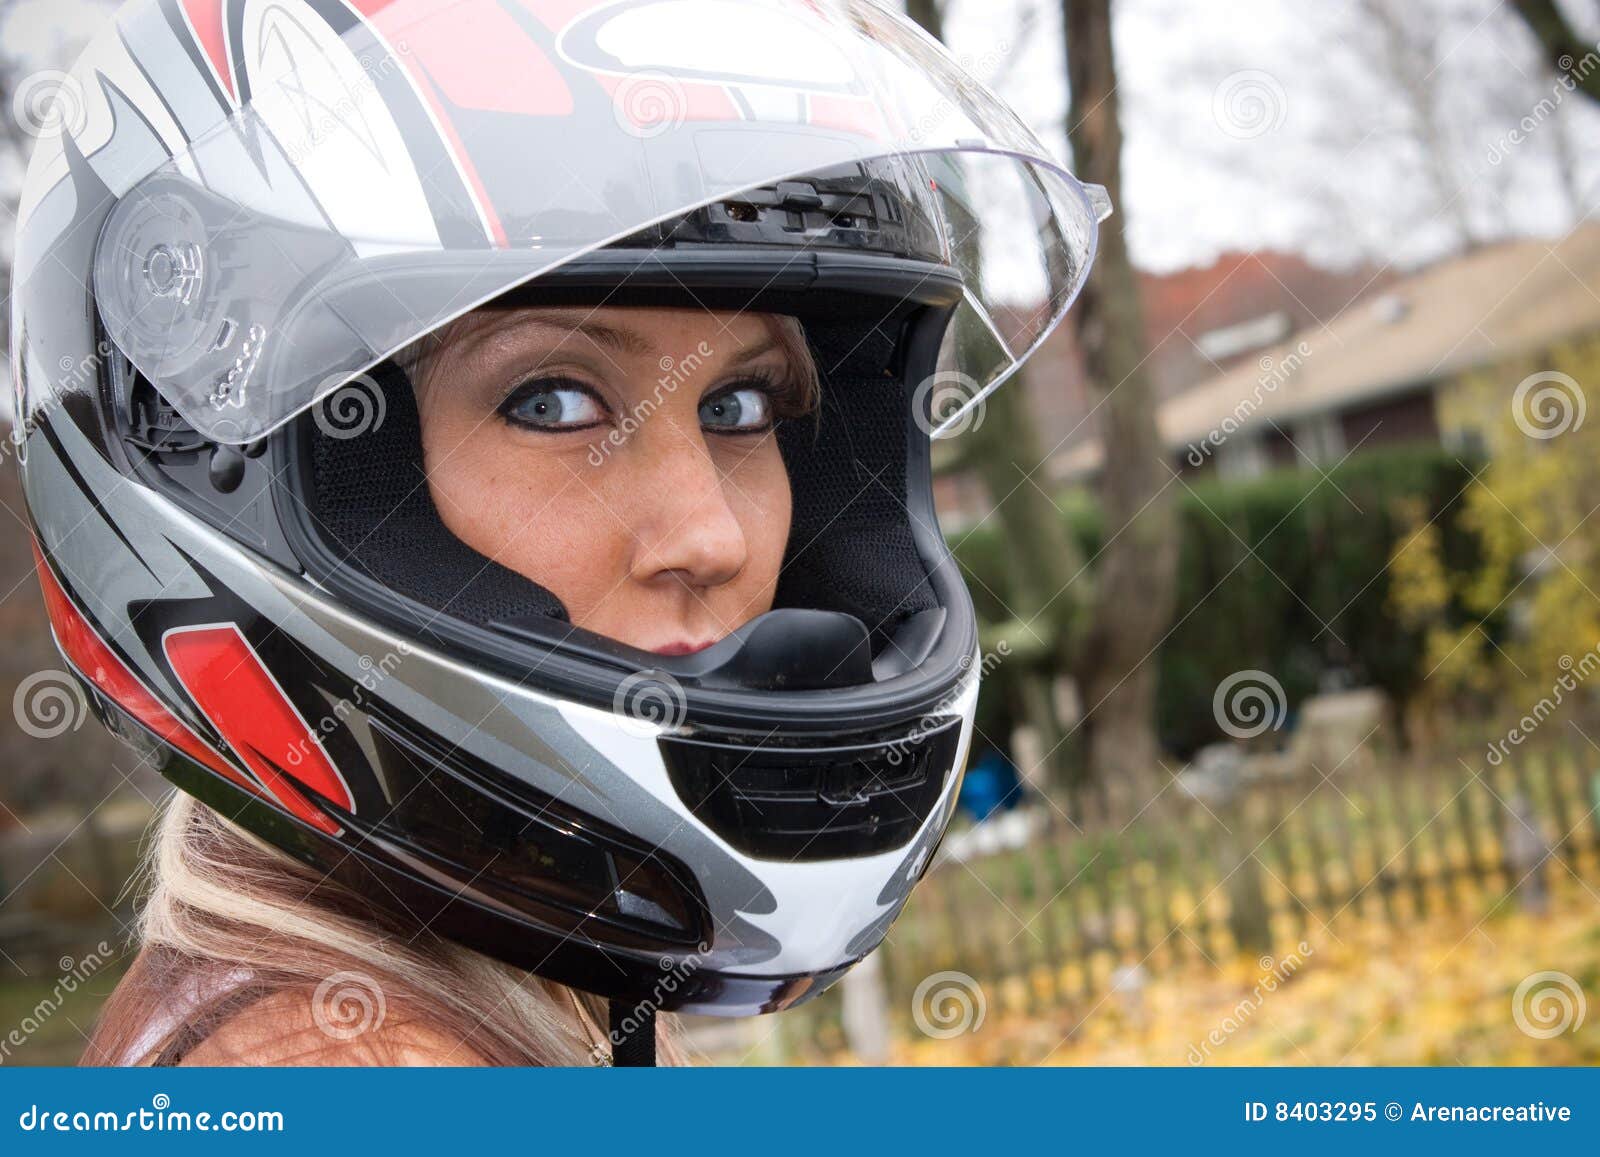 Grens kromme Fobie Vrouw die een Helm draagt stock afbeelding. Image of stellen - 8403295